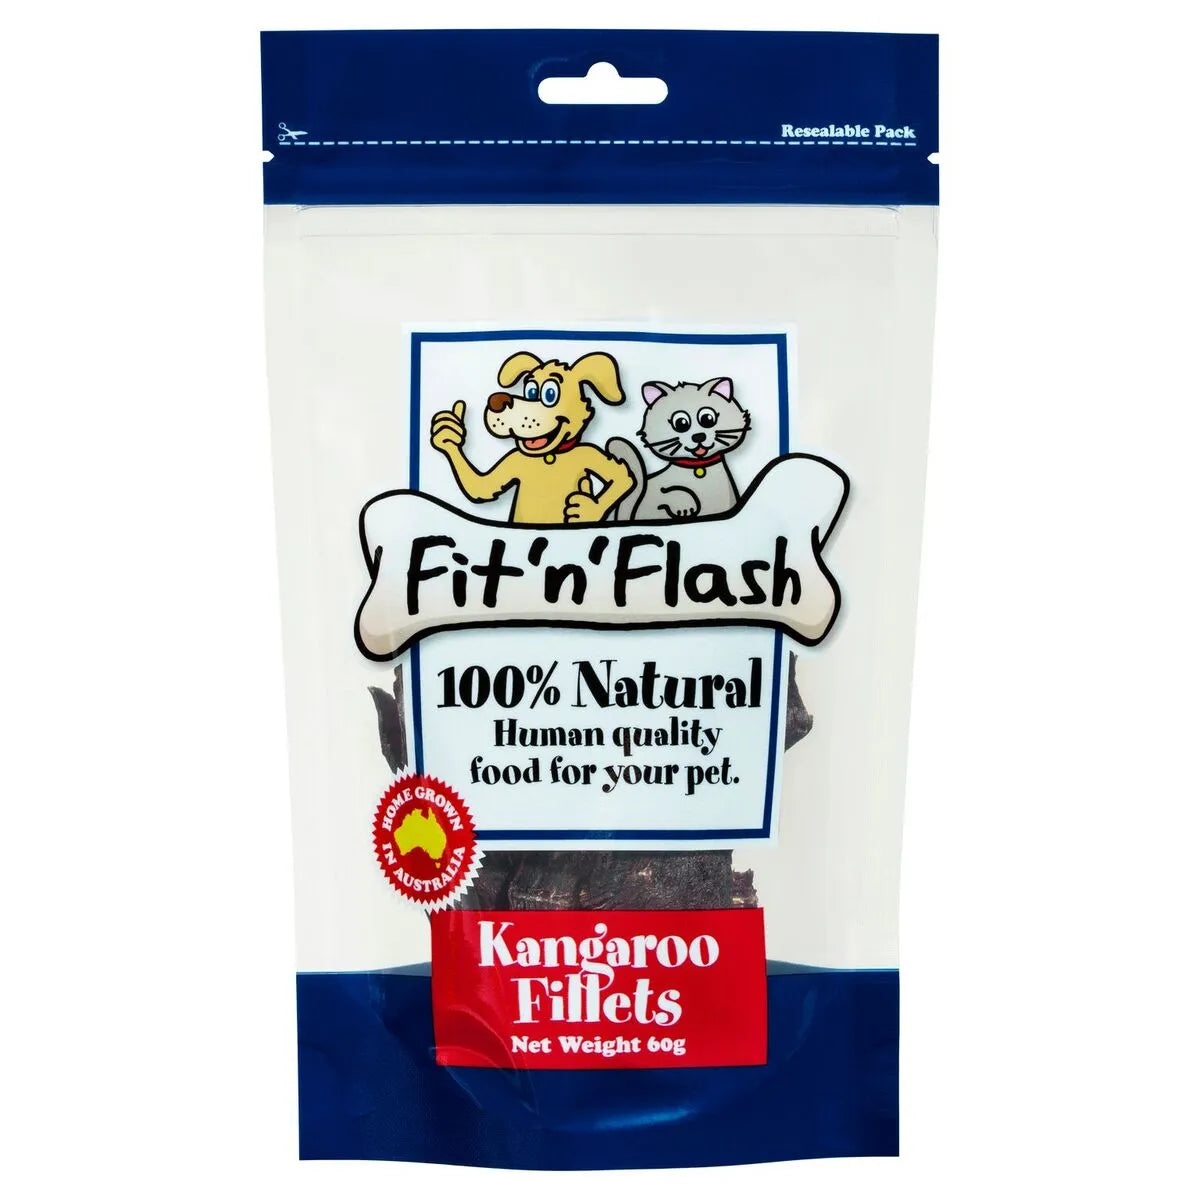 Fit'n'Flash - Kangaroo Fillets 60g